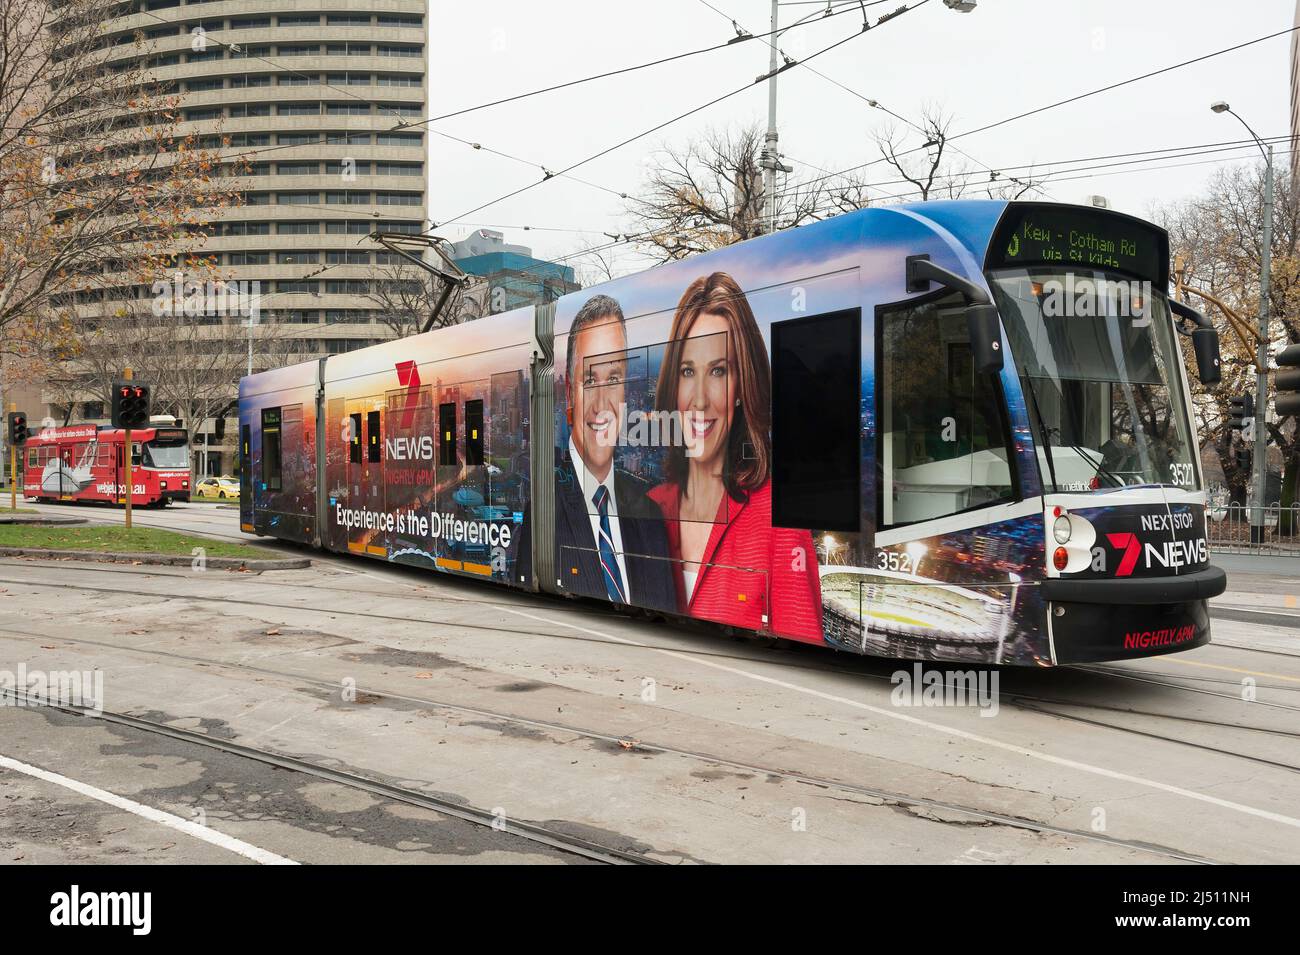 Eine farbenfrohe, moderne Straßenbahn im Zentrum von Melbourne an einem Winters-Nachmittag, die für einen lokalen Fernsehsender wirbt Stockfoto